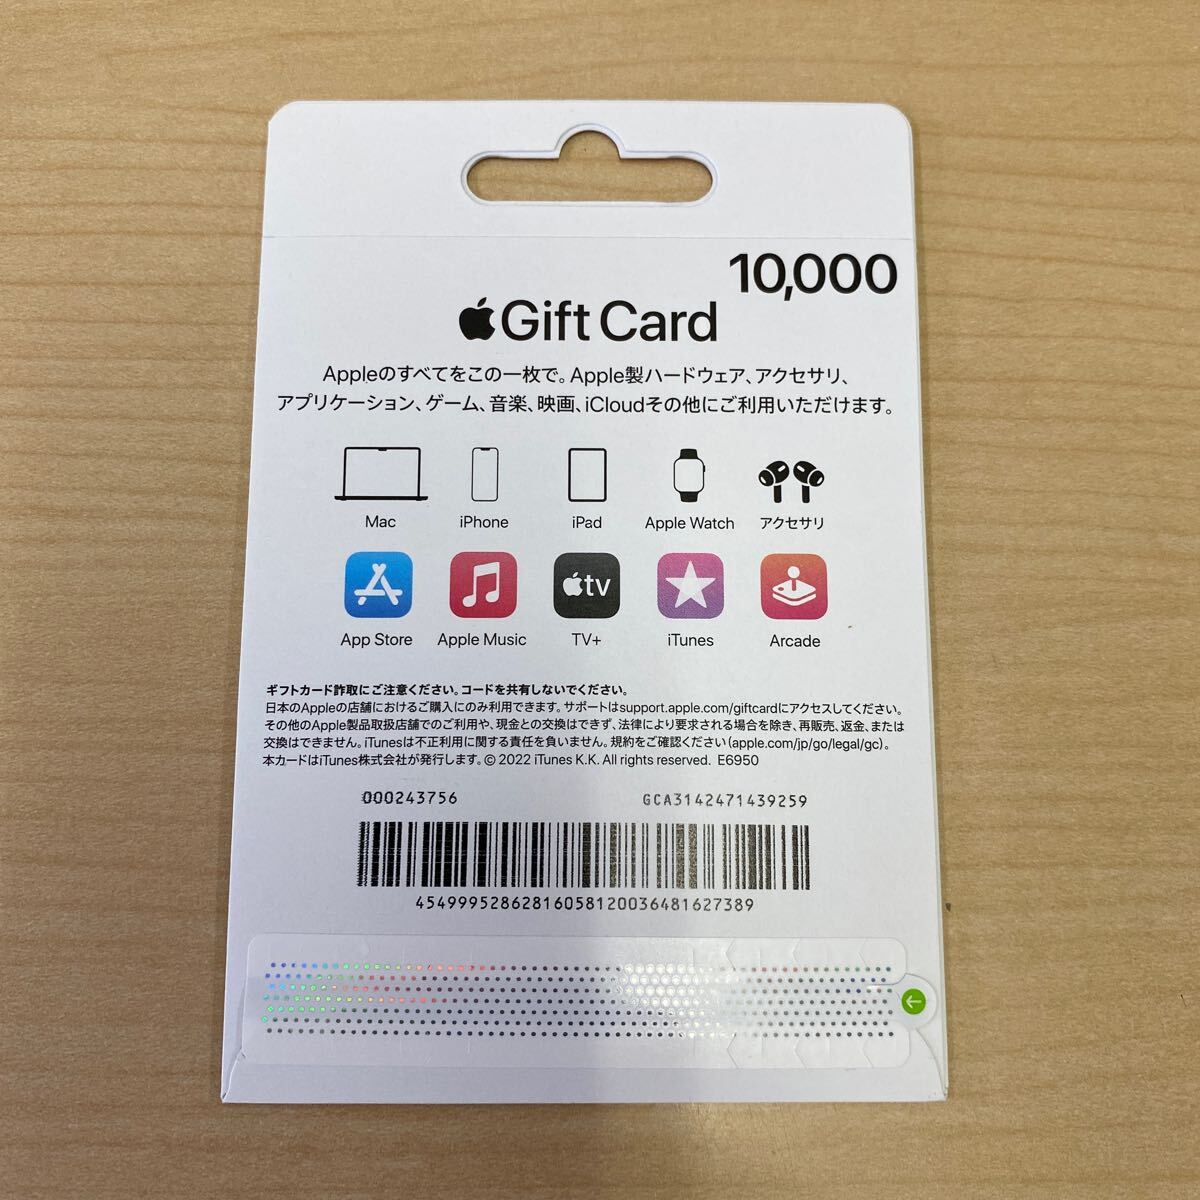 【TF0324】 未使用 Apple Gift Card アップル ギフトカード 10000円分 iTunes App コード通知可能_画像2